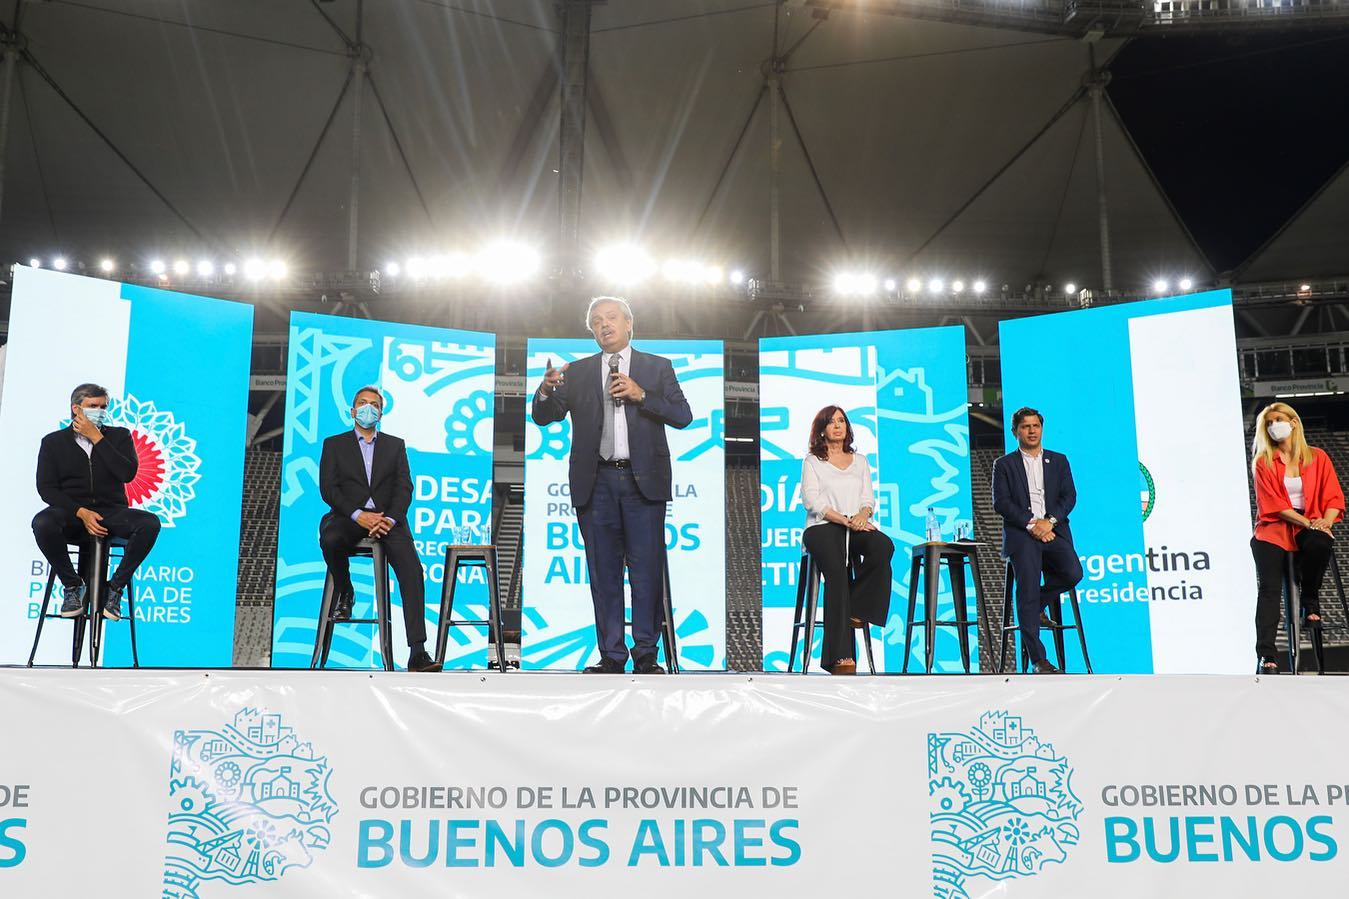 Alberto Fernández : “Vamos a poner a la Argentina de pie y vamos a reconstruir este país, porque todavía está pendiente la Argentina que nos merecemos”.